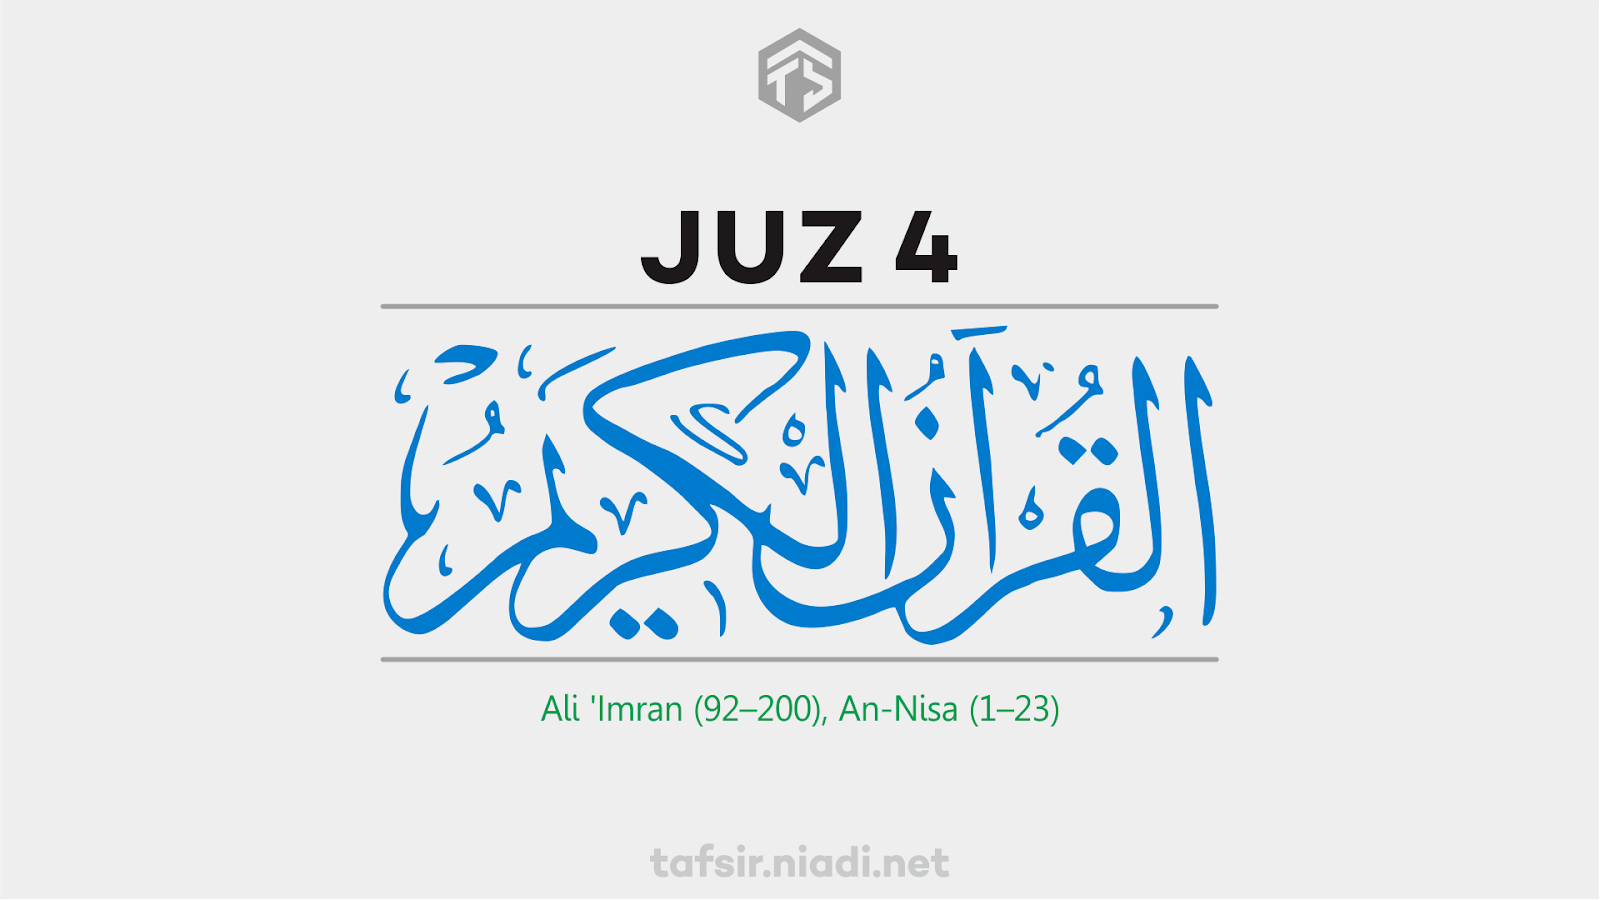 Baca online Alquran Juz 4, Surah Ali 'Imran ayat 92–200, An-Nisa ayat 1–23. Website Alquran online cepat, ringan, dan hemat kuota, tafsir.niadi.net